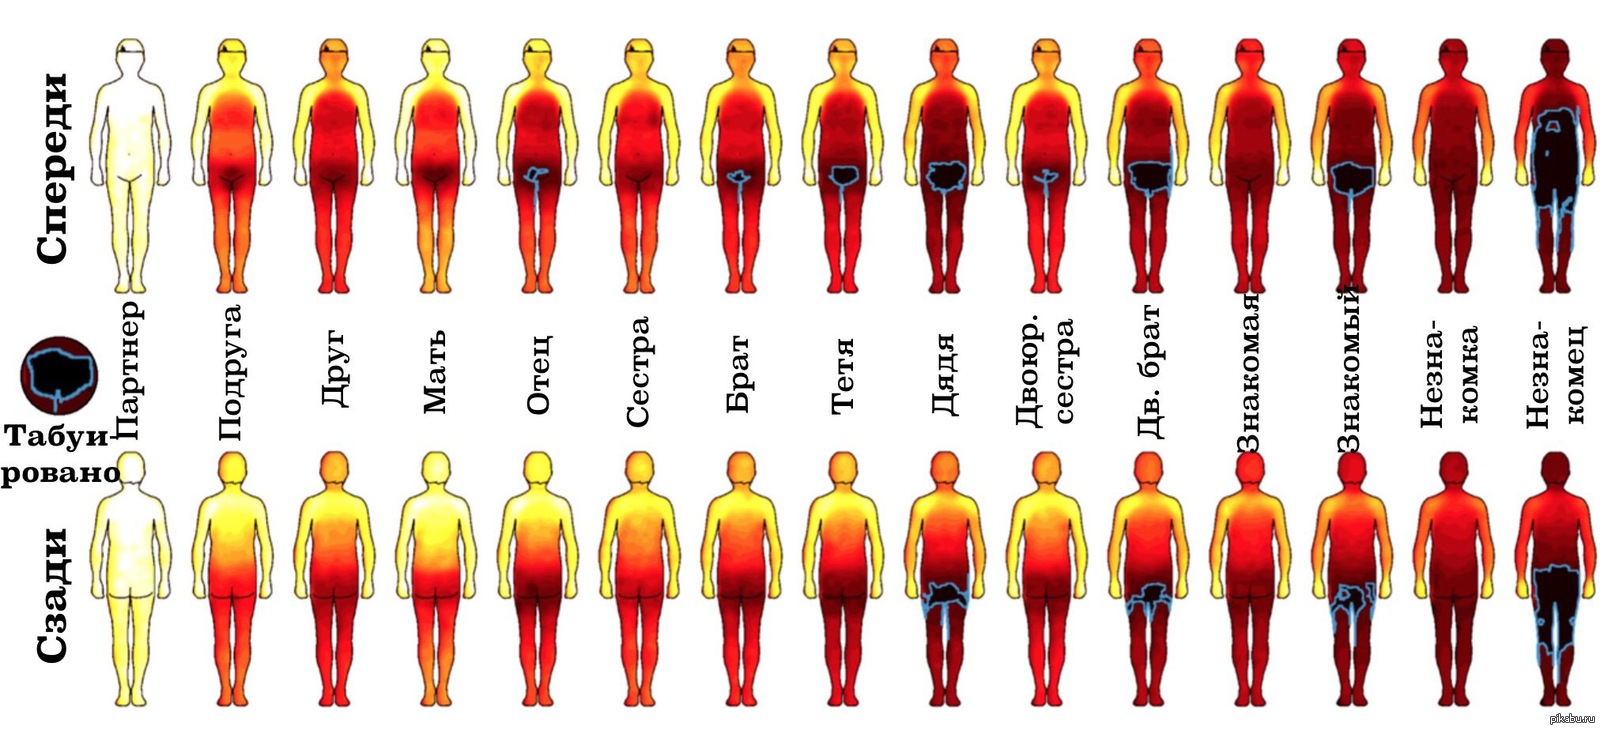 Мужские эрогенные зоны. Тепловая карта эмоций человека. Самые чувствительные зоны тела. Чувствительныии части тела у девушек.